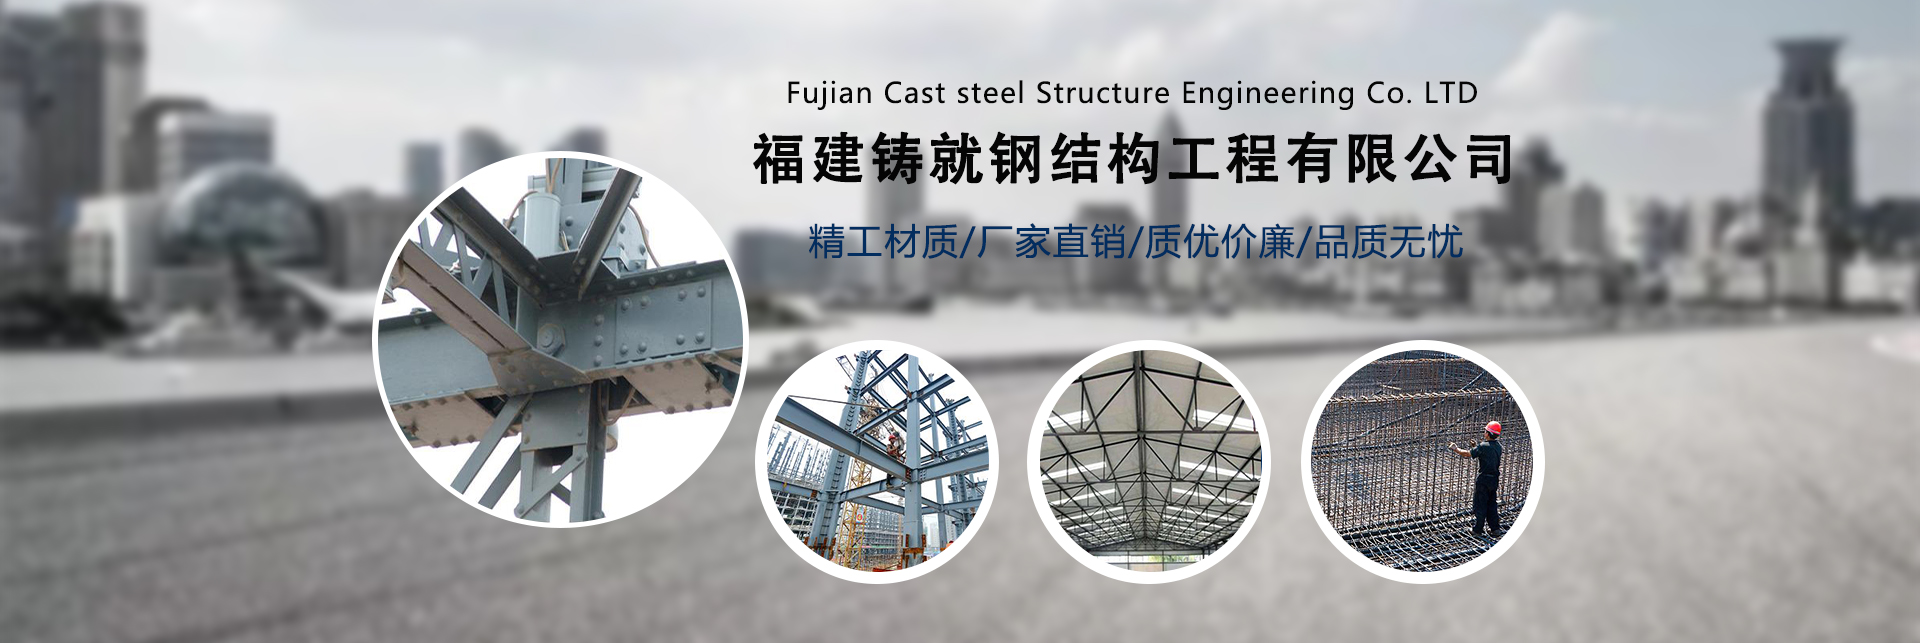 钢结构,福州钢结构厂家,福州钢结构加工